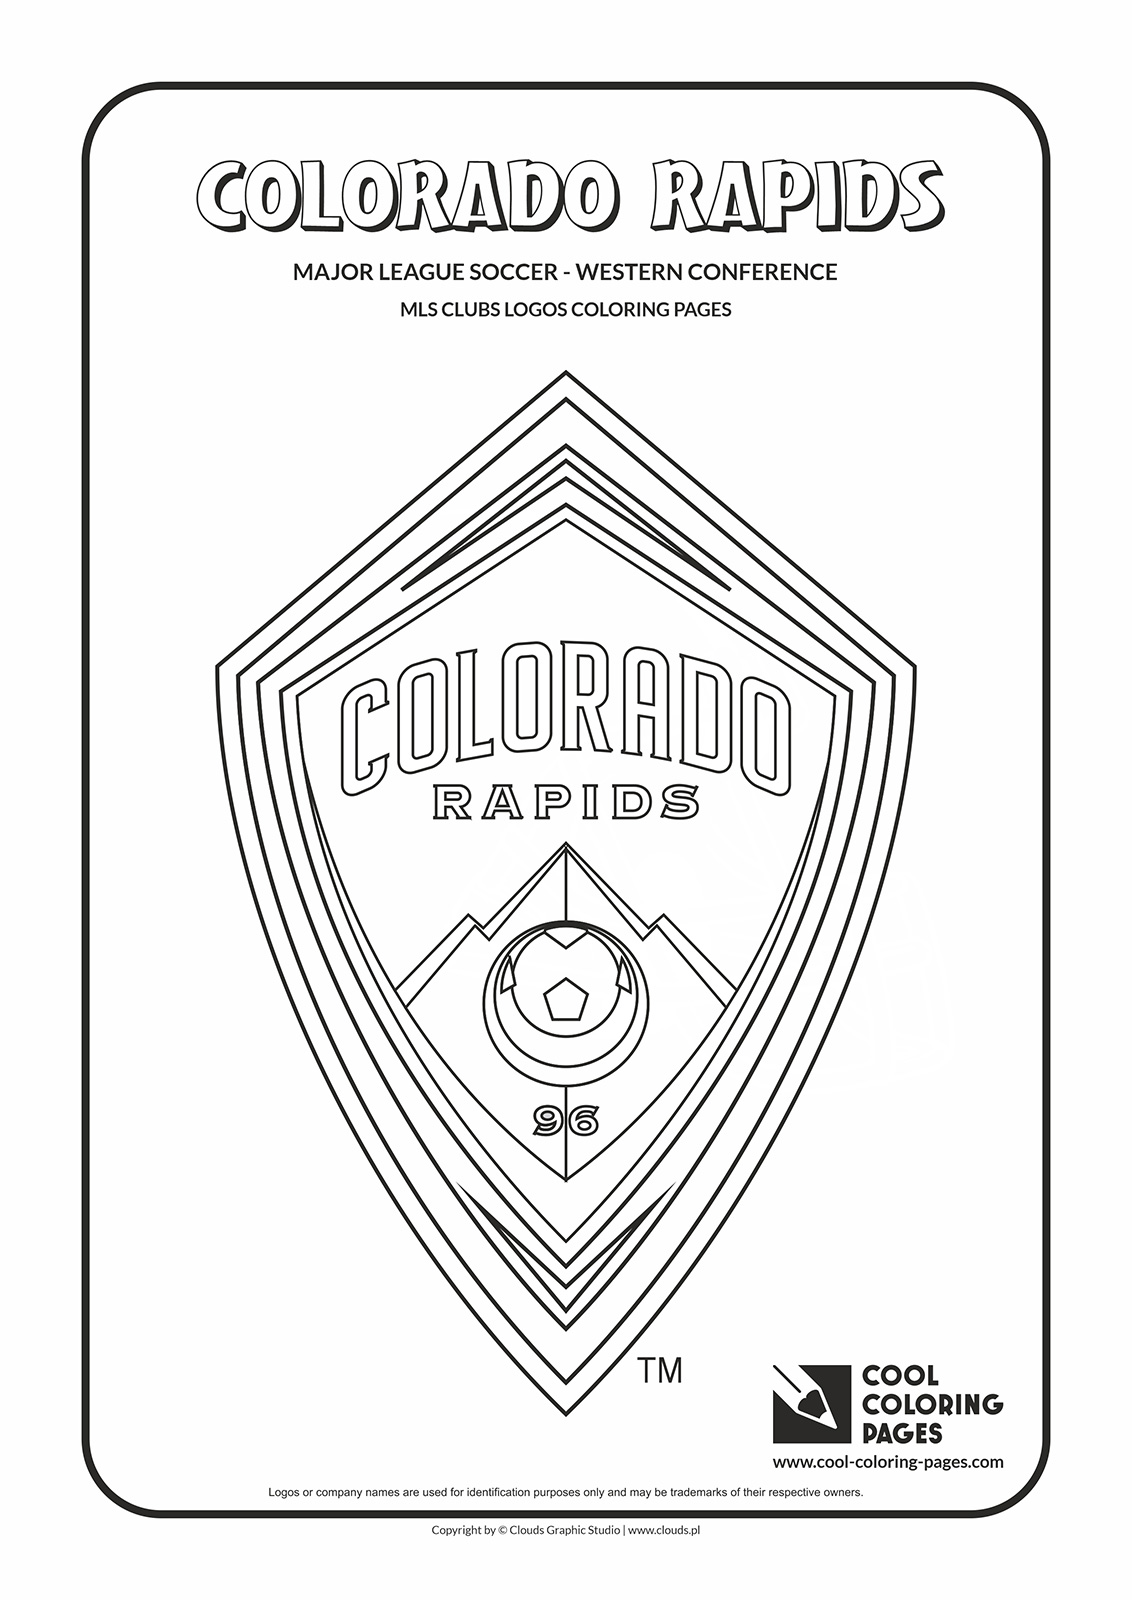 Coloring page with Colorado Rapids logo